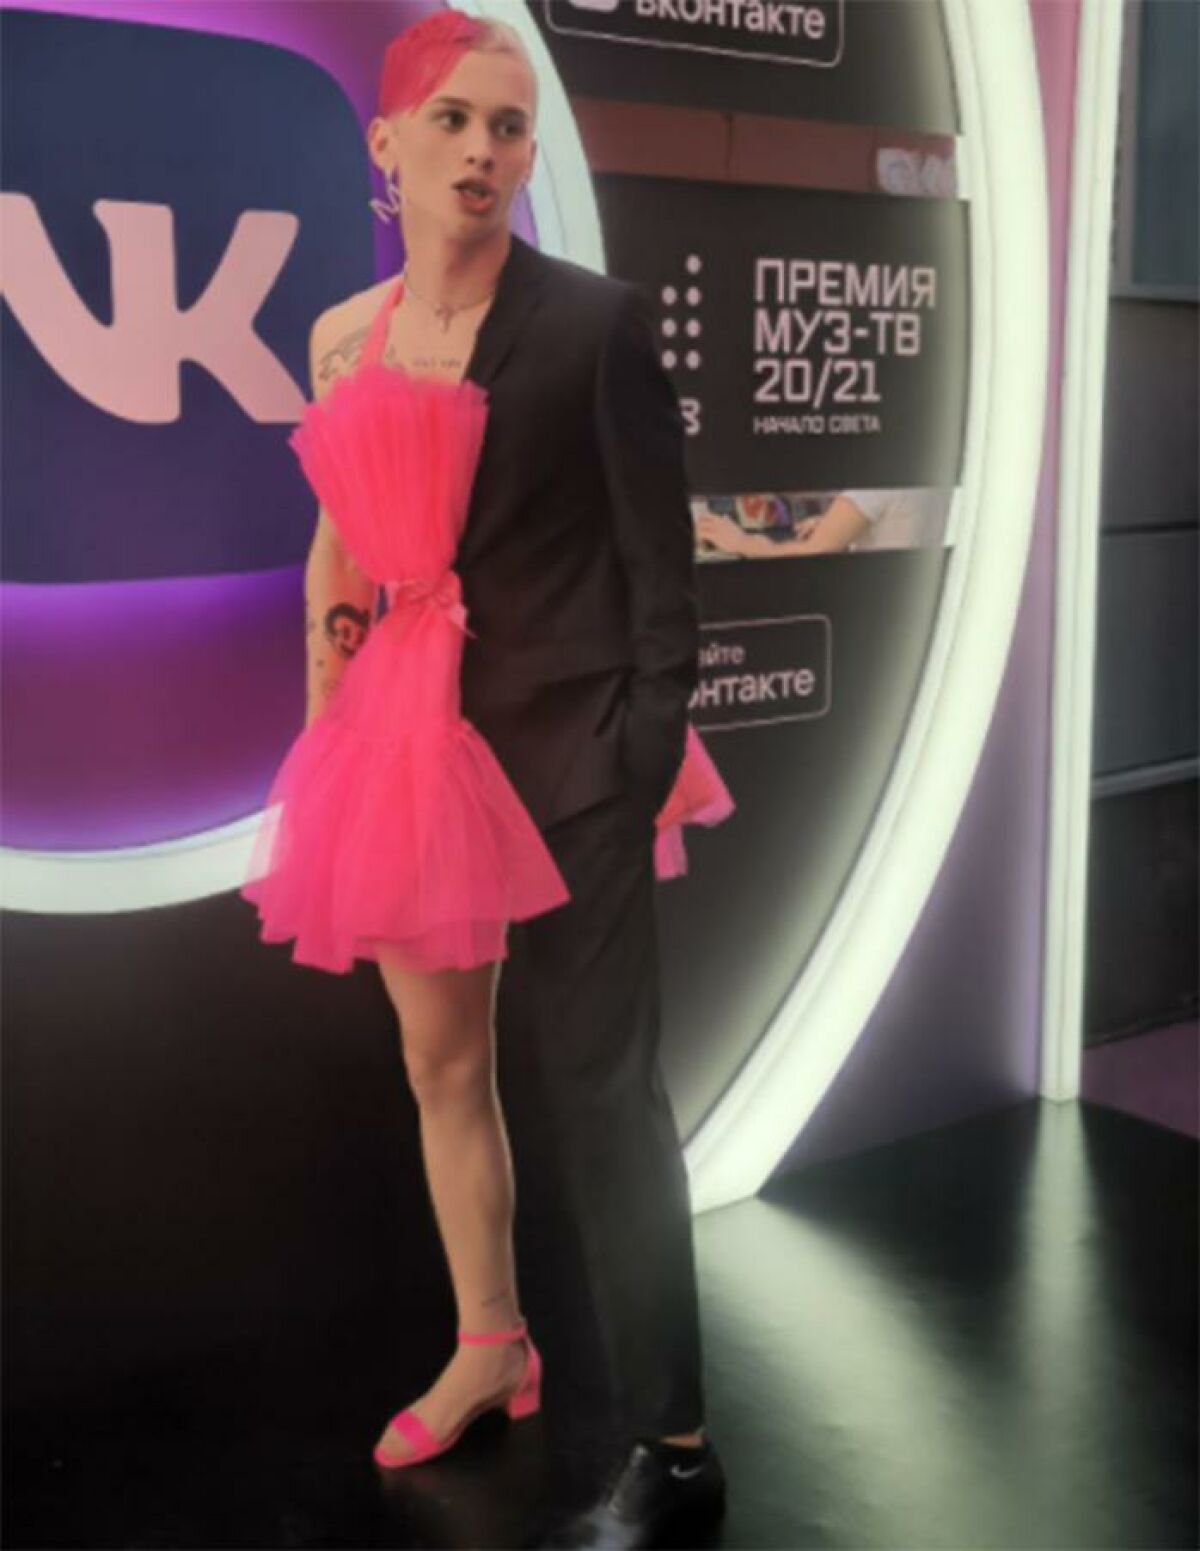 Даня Милохин на муз ТВ 2021